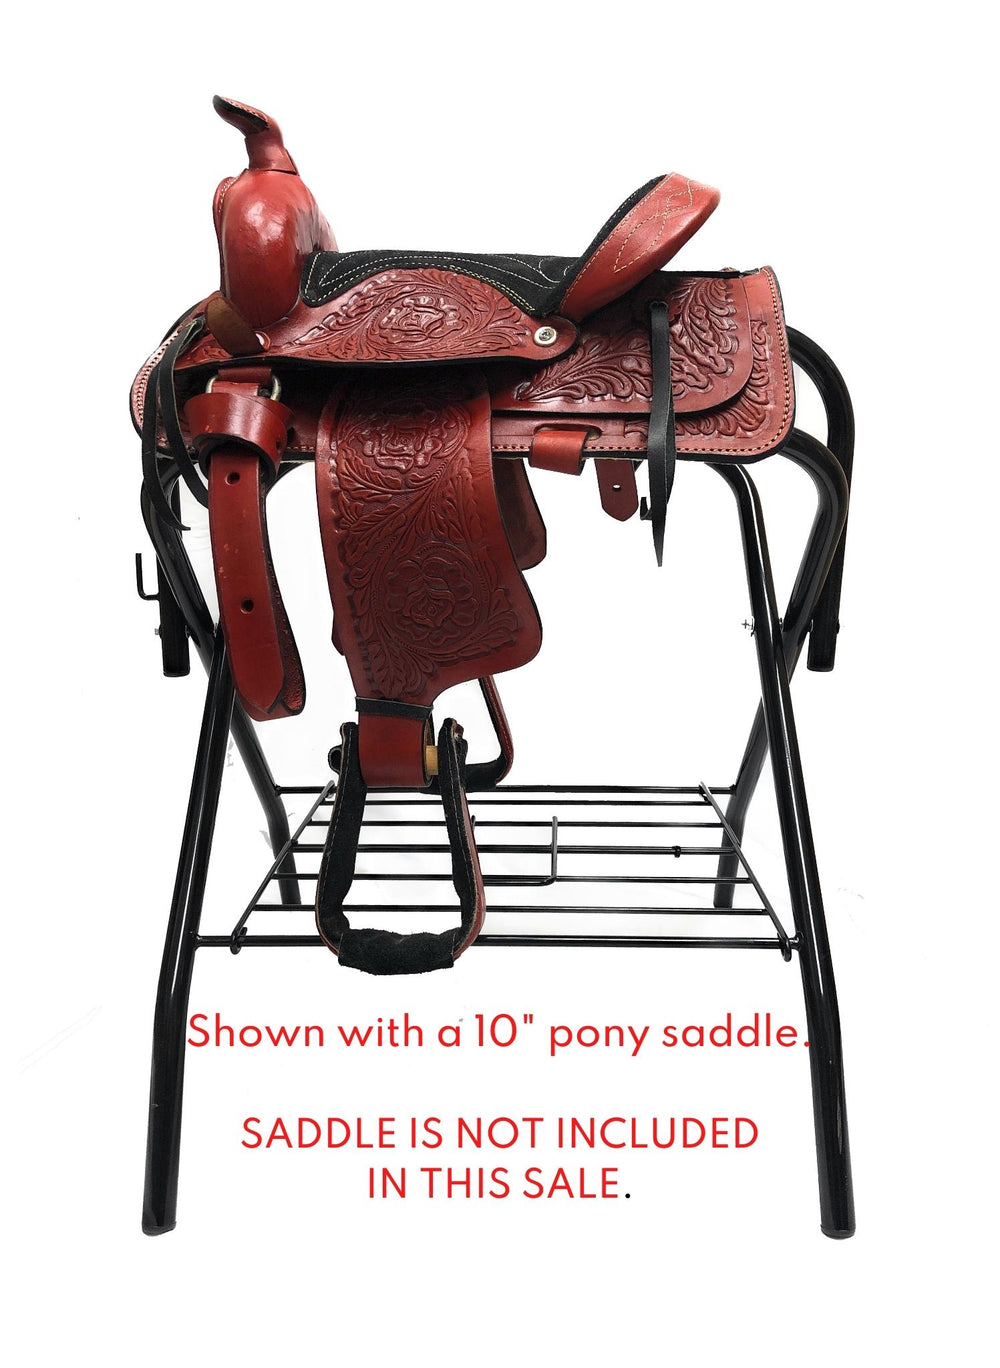 10' pony saddle 